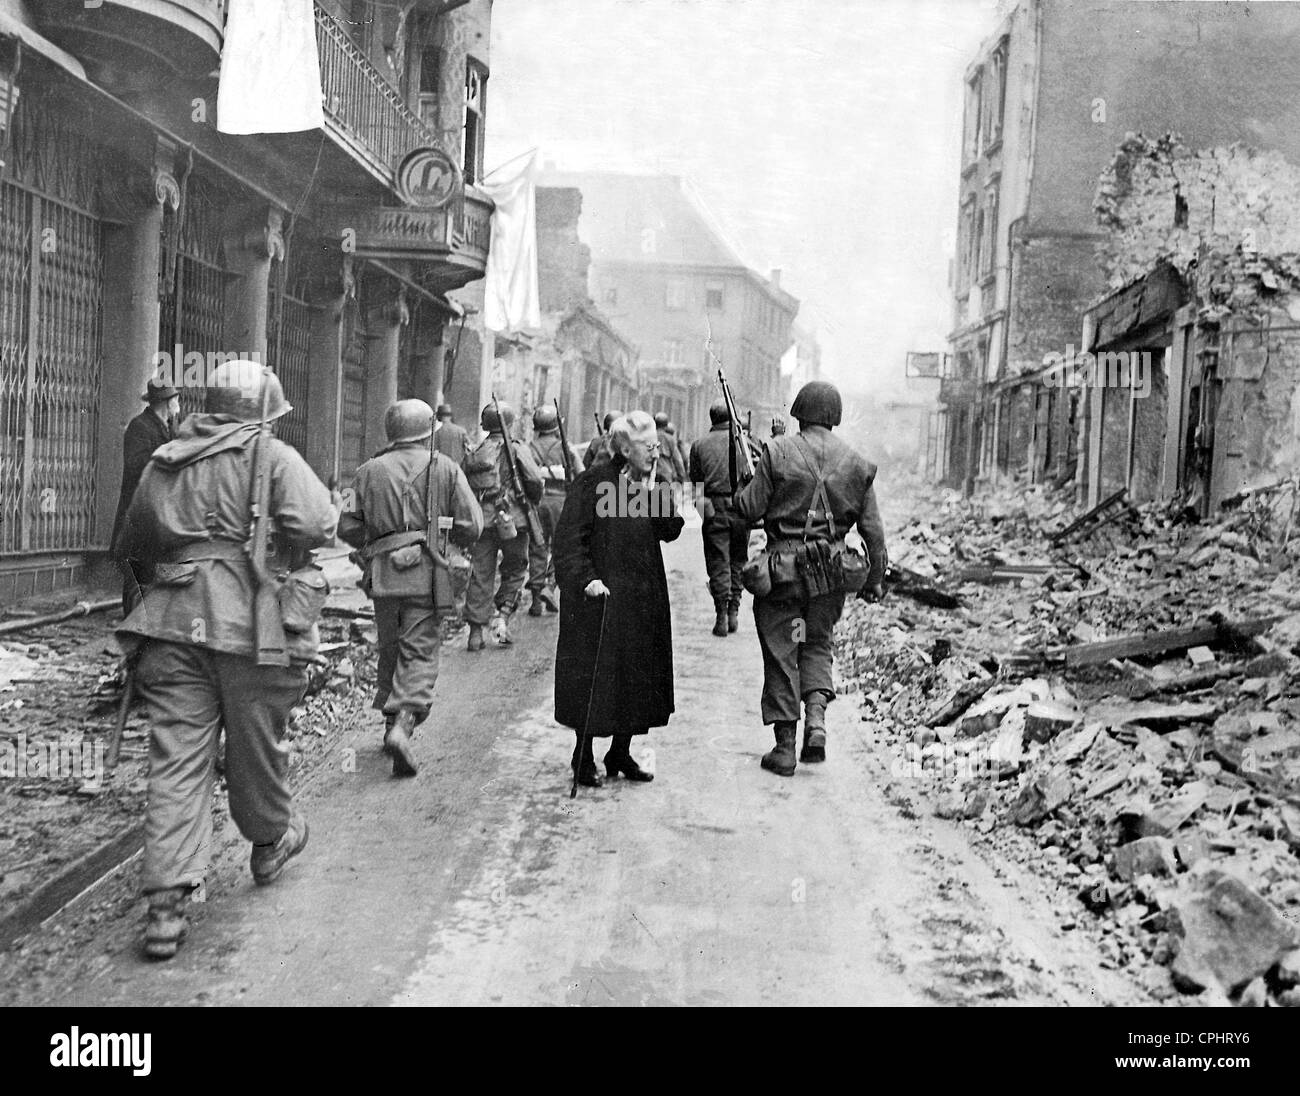 L'infanterie américaine à Bensheim, 1945 Banque D'Images